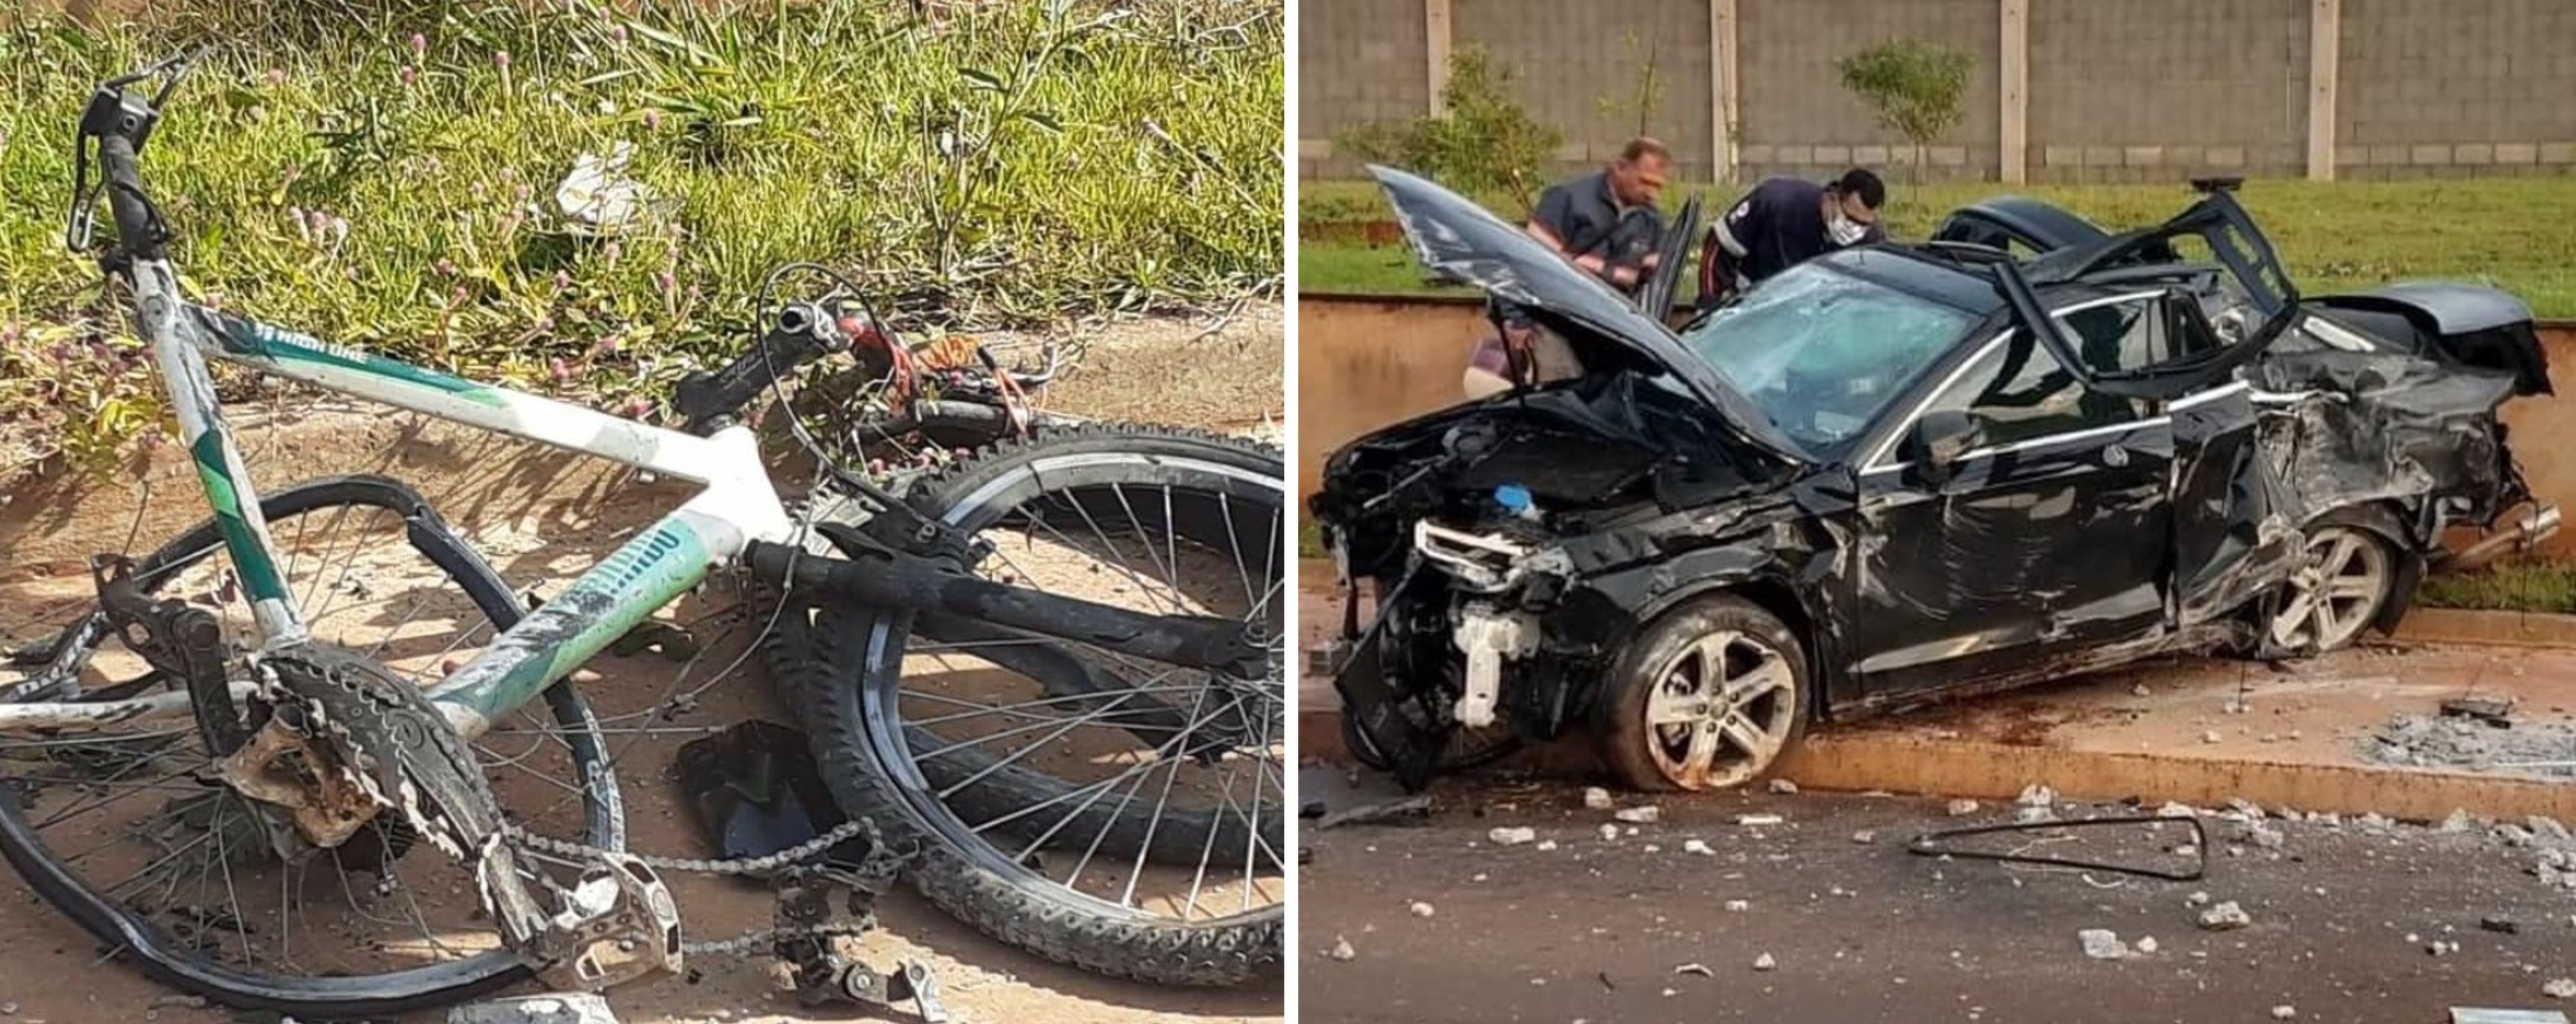 Justiça nega pedido de prisão de motorista que atropelou e matou ciclista em Jaú